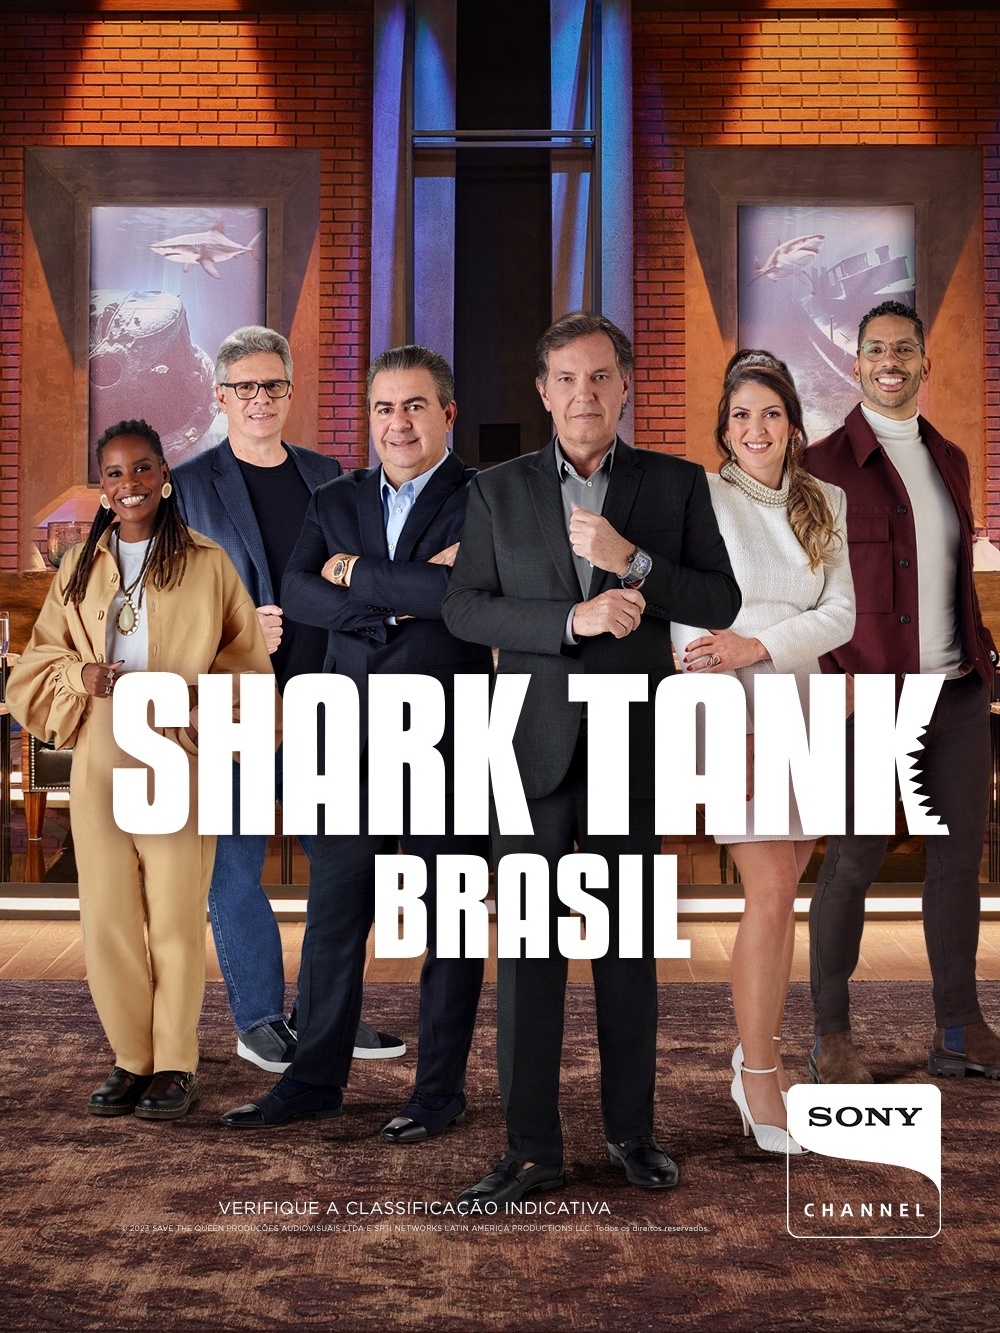 Sony Channel inicia gravações da nova temporada de “Shark Tank